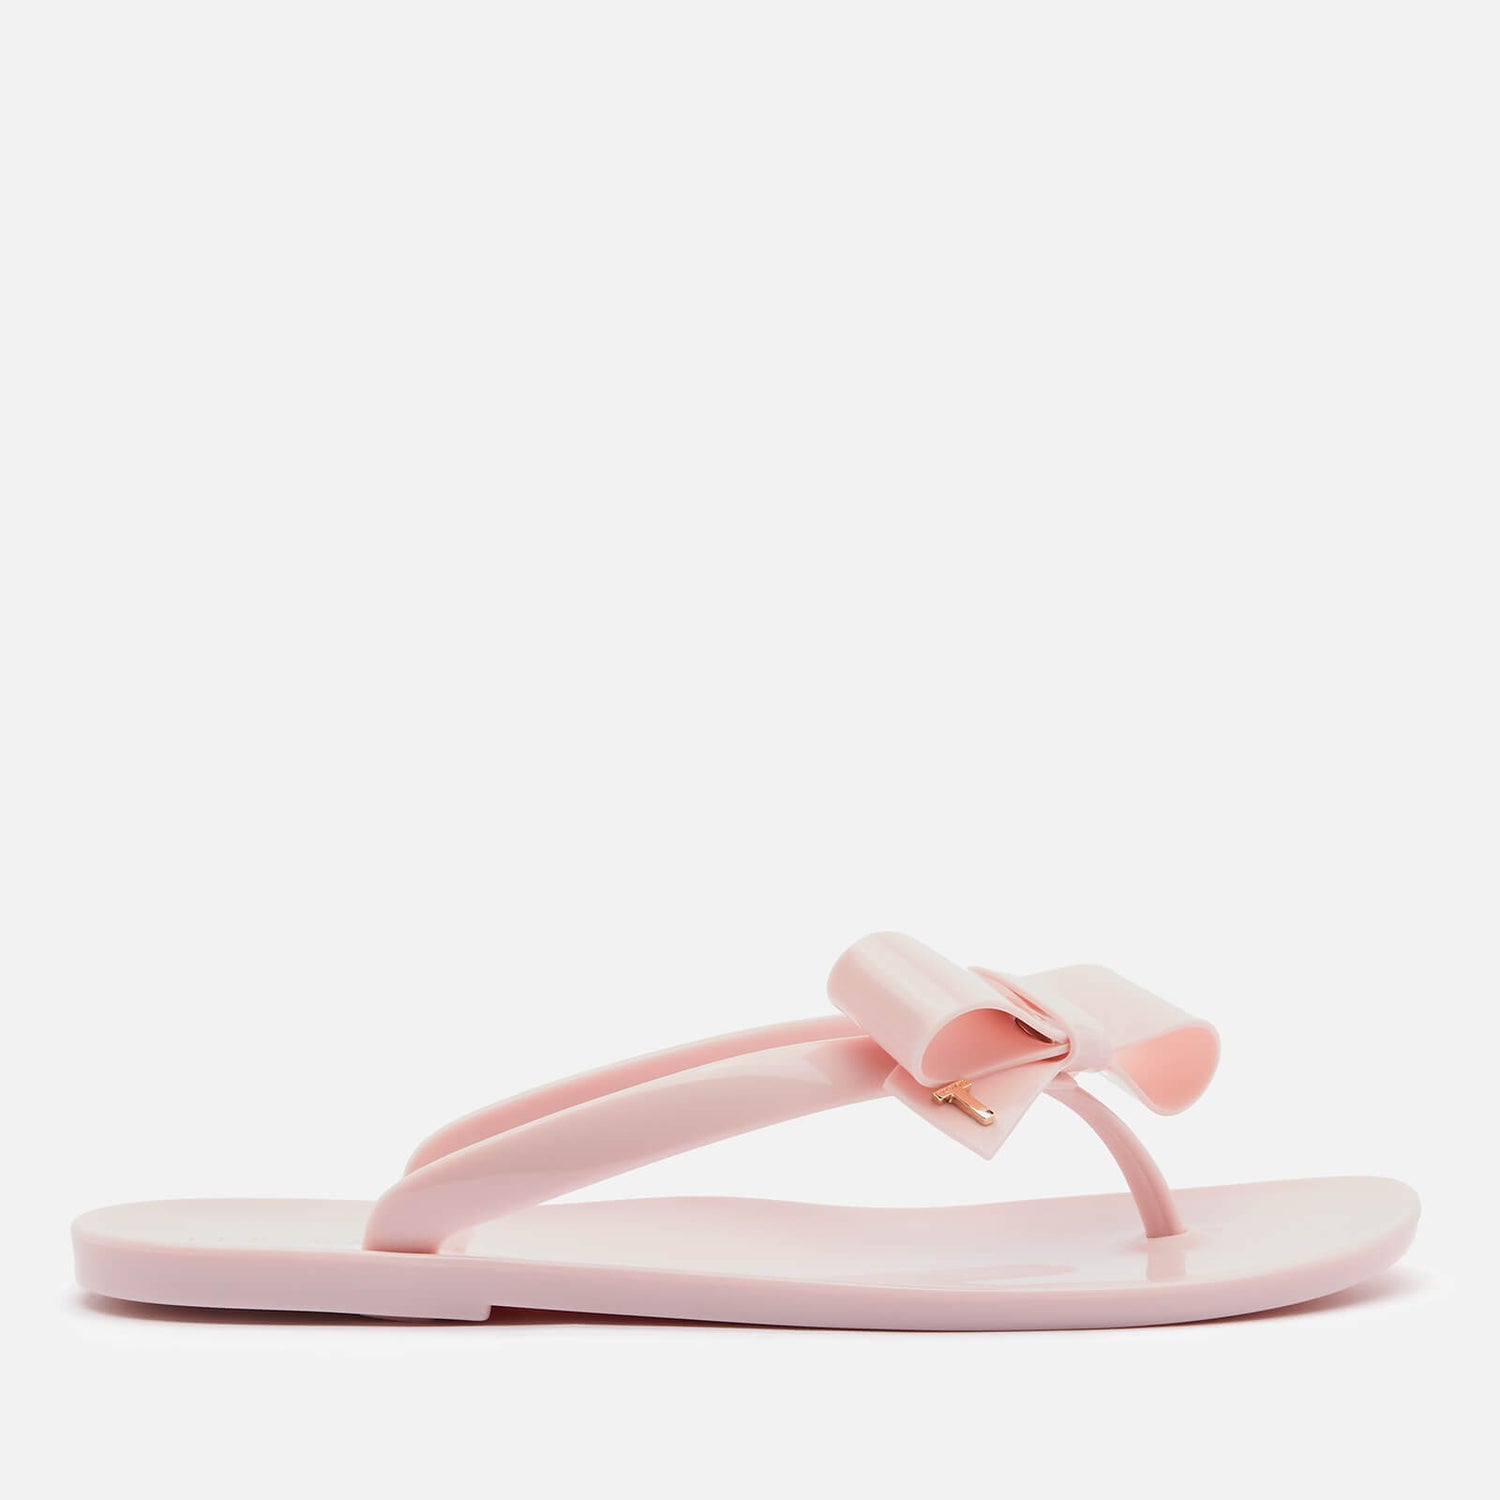 Ted Baker London womens Flip Flop sandal Cream Ankle Strap Bow Designer  Thong 41 | eBay